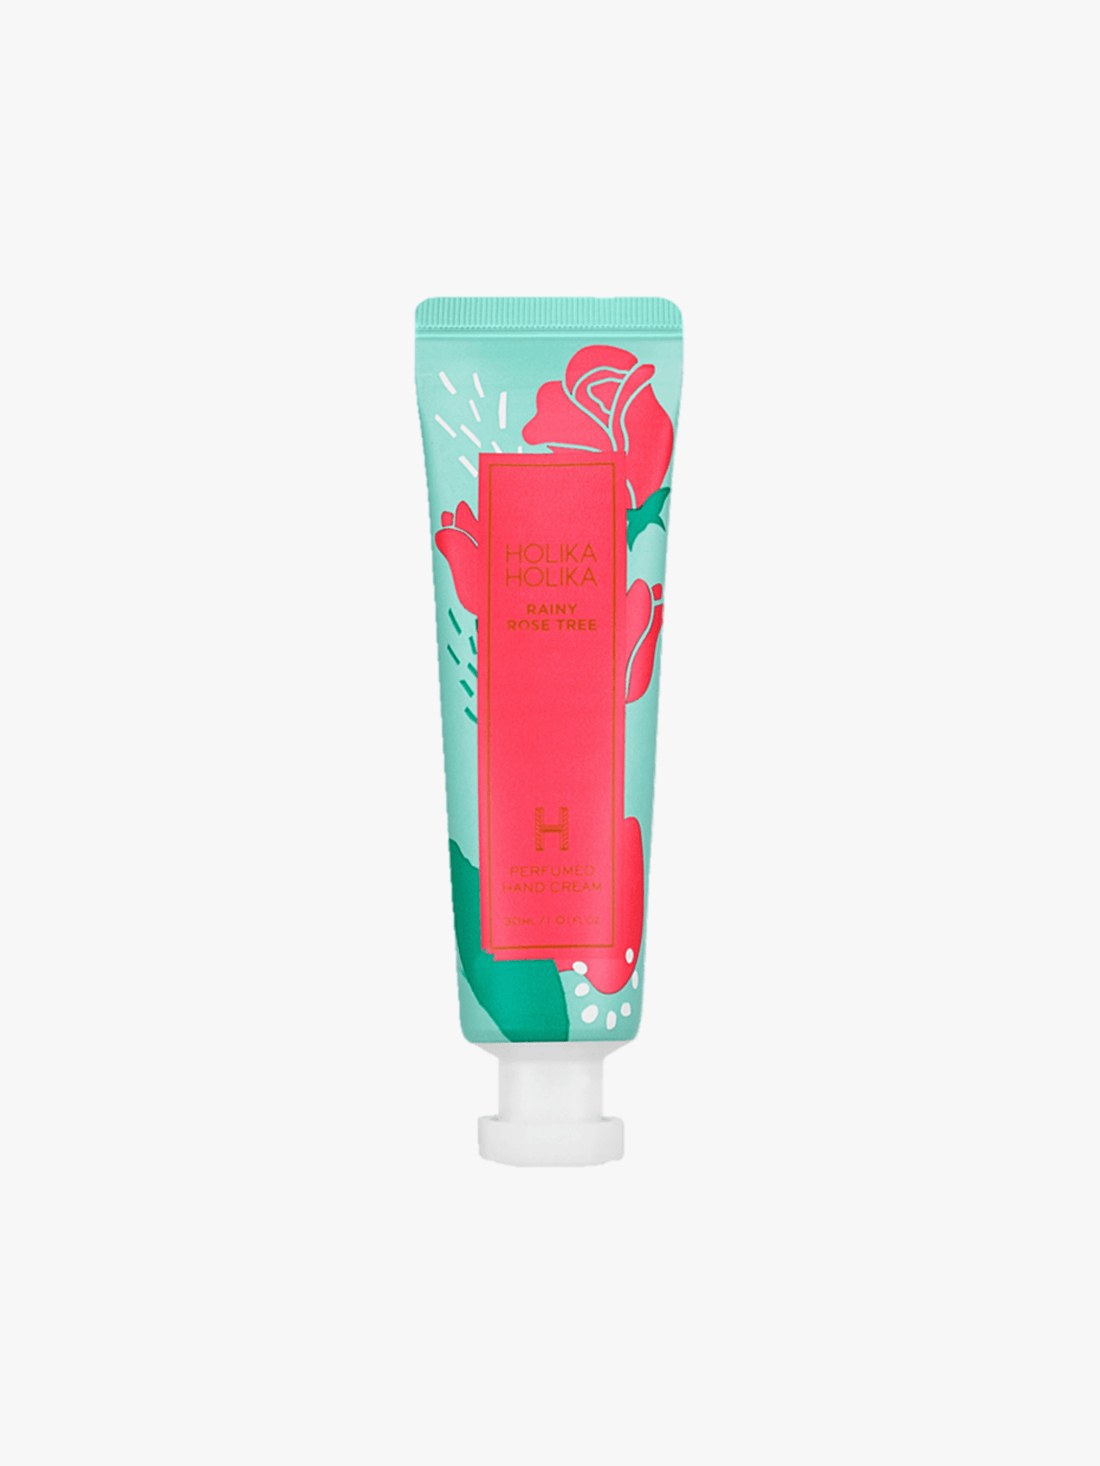 Holika Holika - Hand cream - Rainy Rose Tree Perfumed Hand Cream